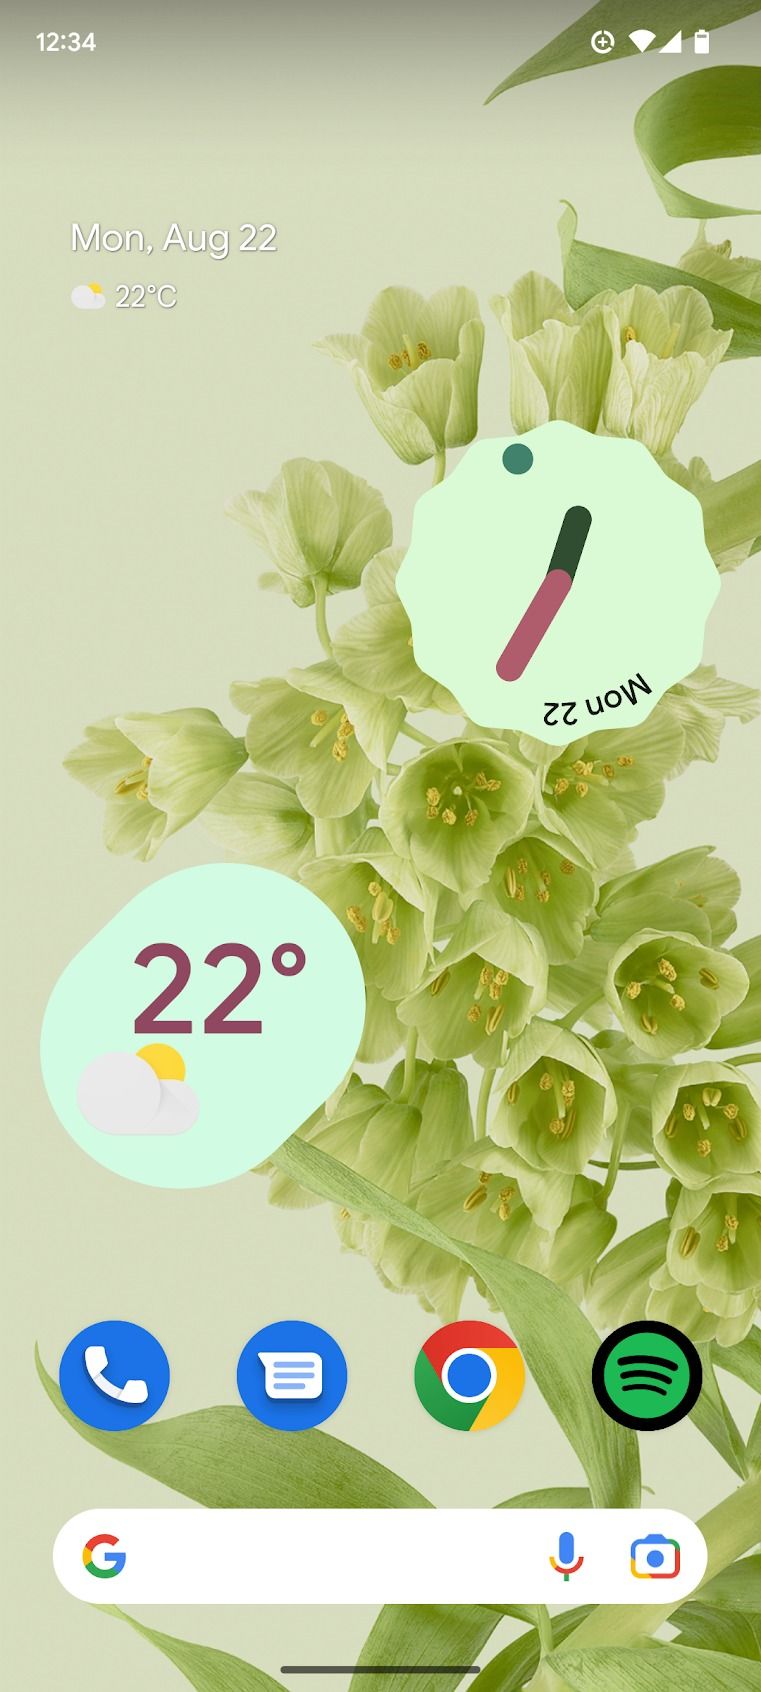 Uma captura de tela da página inicial de um telefone Android é exibida, apresentando dois widgets de relógio ao lado de vários ícones que representam diferentes aplicativos e funções.